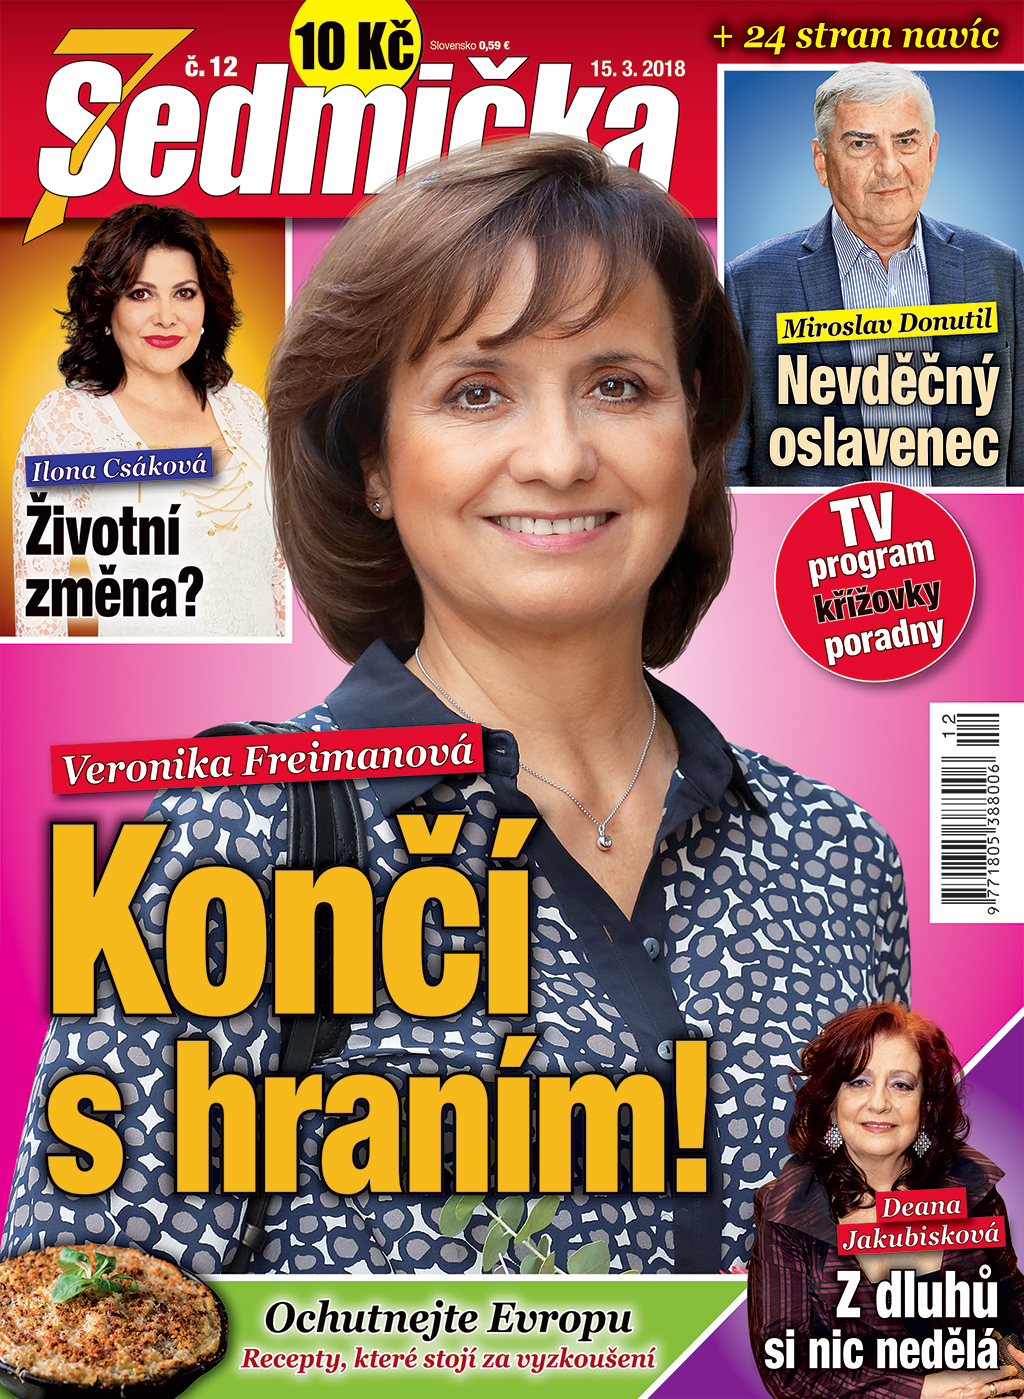 Aktuální číslo časopisu Sedmička.